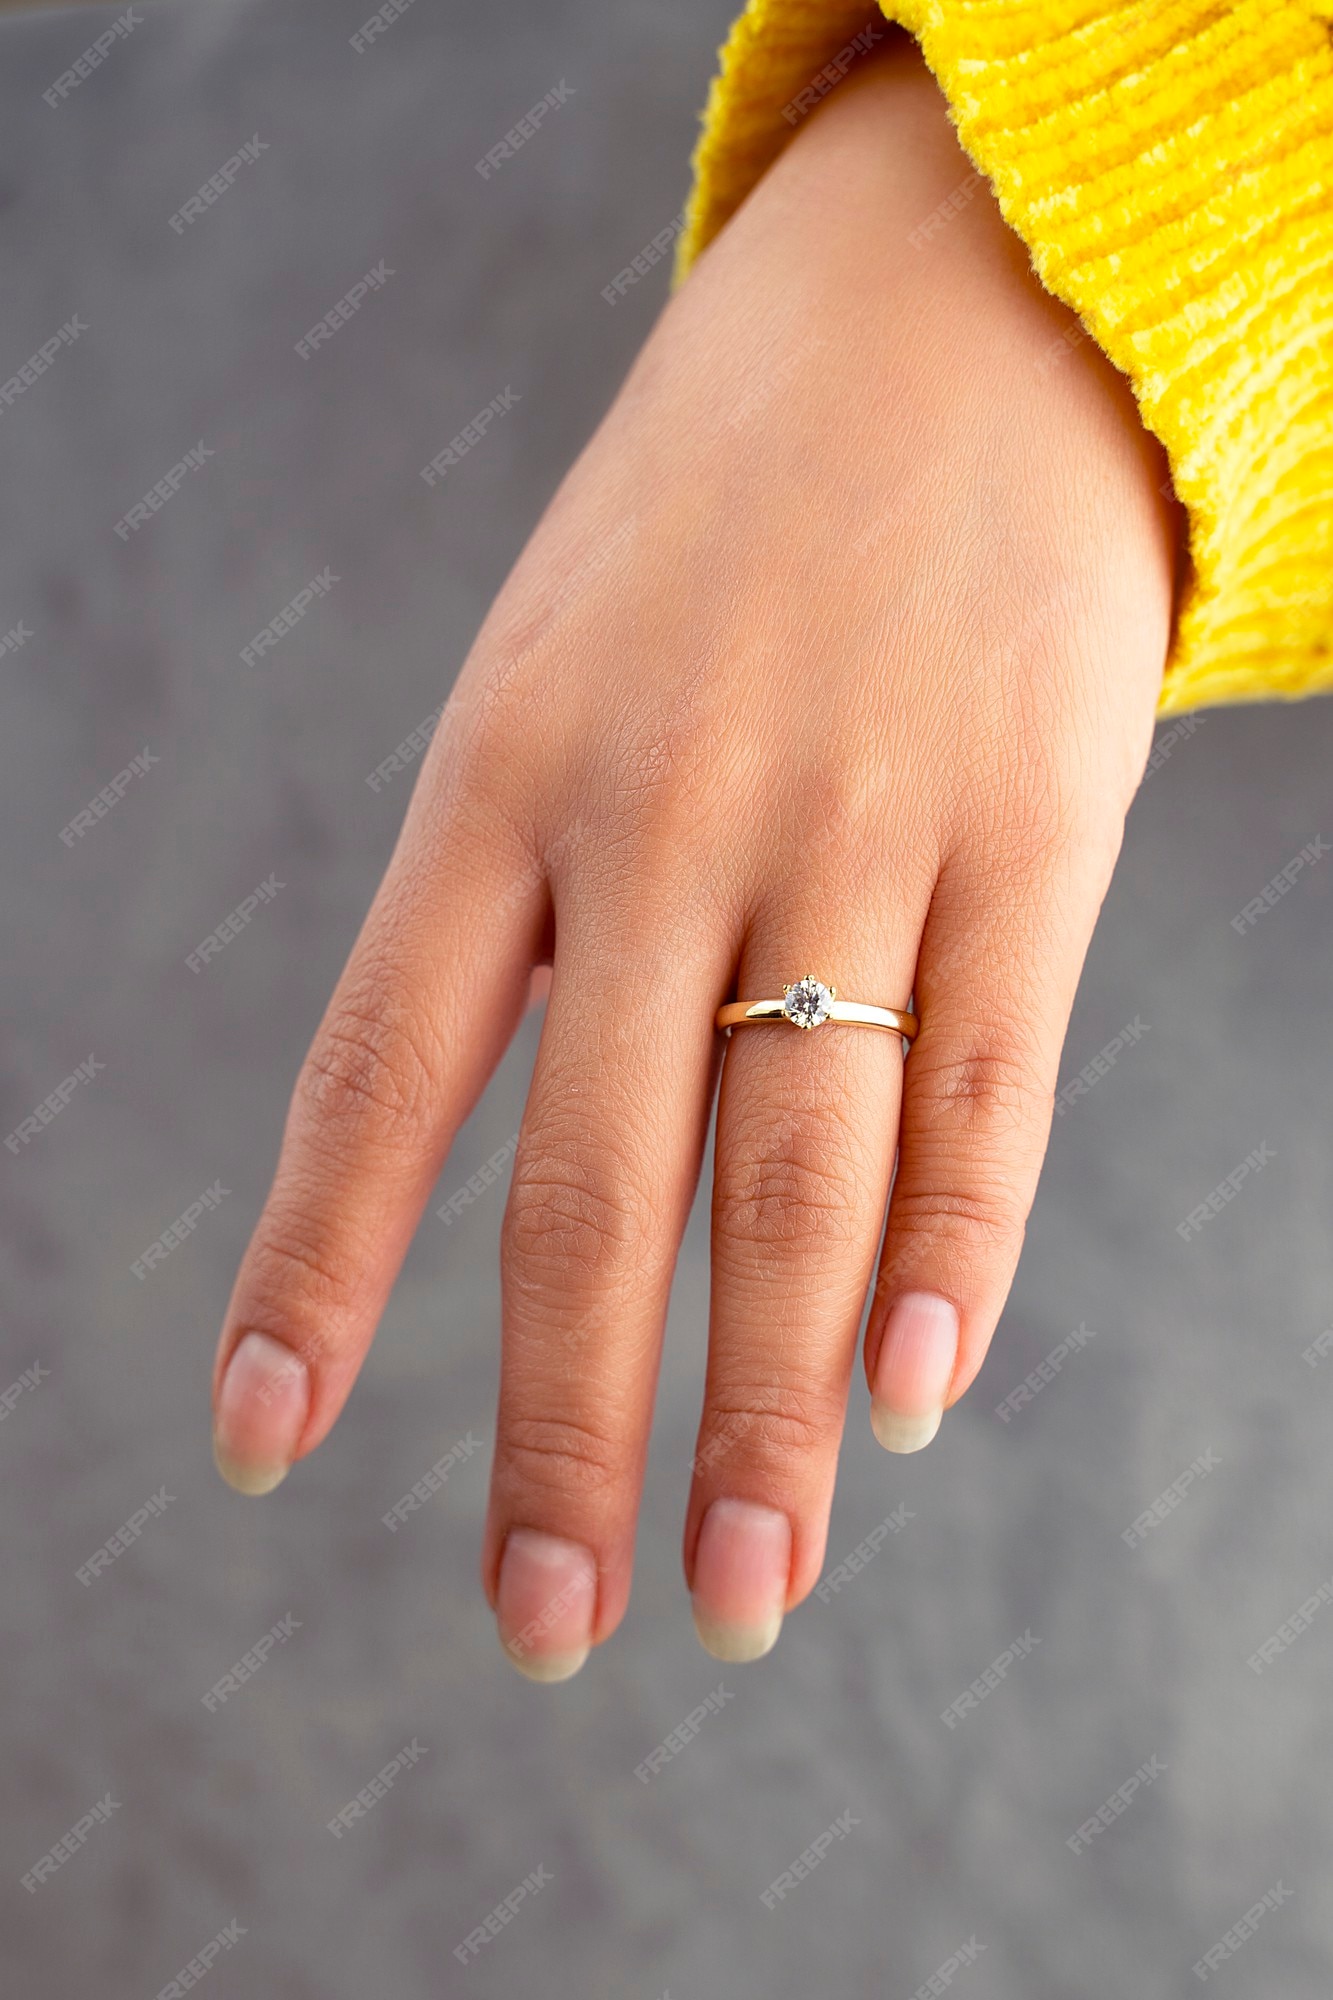 Anillos en las manos de la novia con un hermoso anillo compromiso | Foto Premium